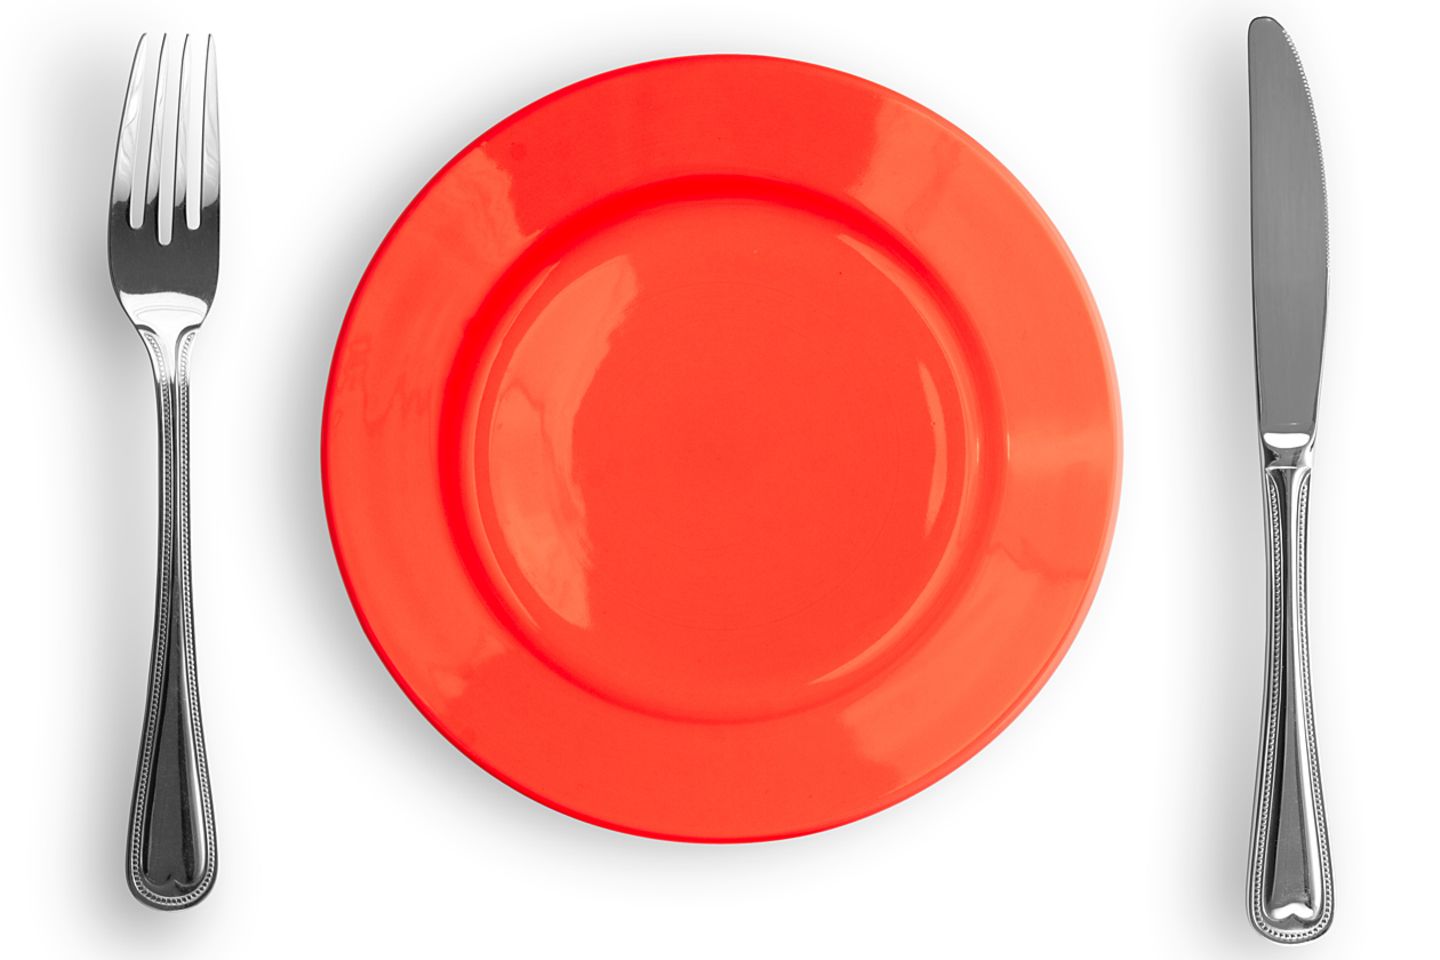 Farblehre der Oxford-Wissenschaftler: Wer weniger essen will, sollte einen roten Teller wählen.